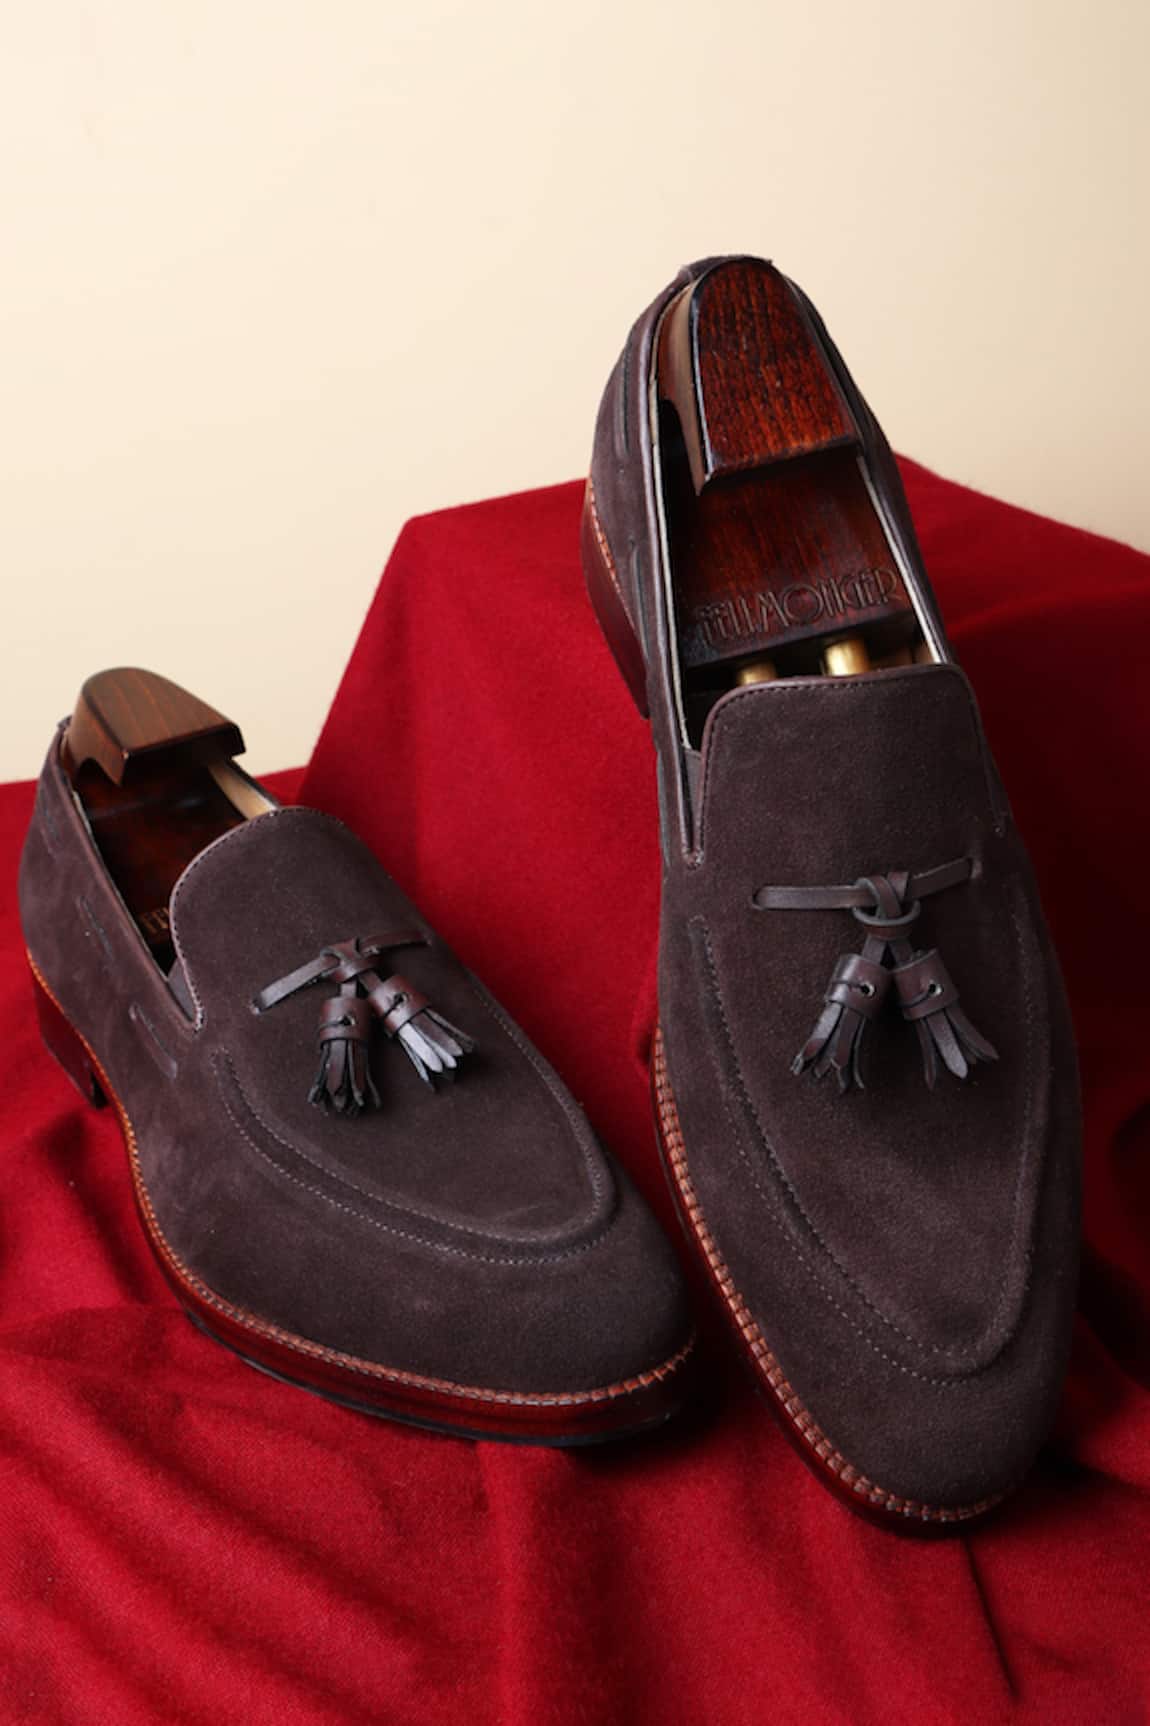 FELLMONGER Leather Tasselled Loafers